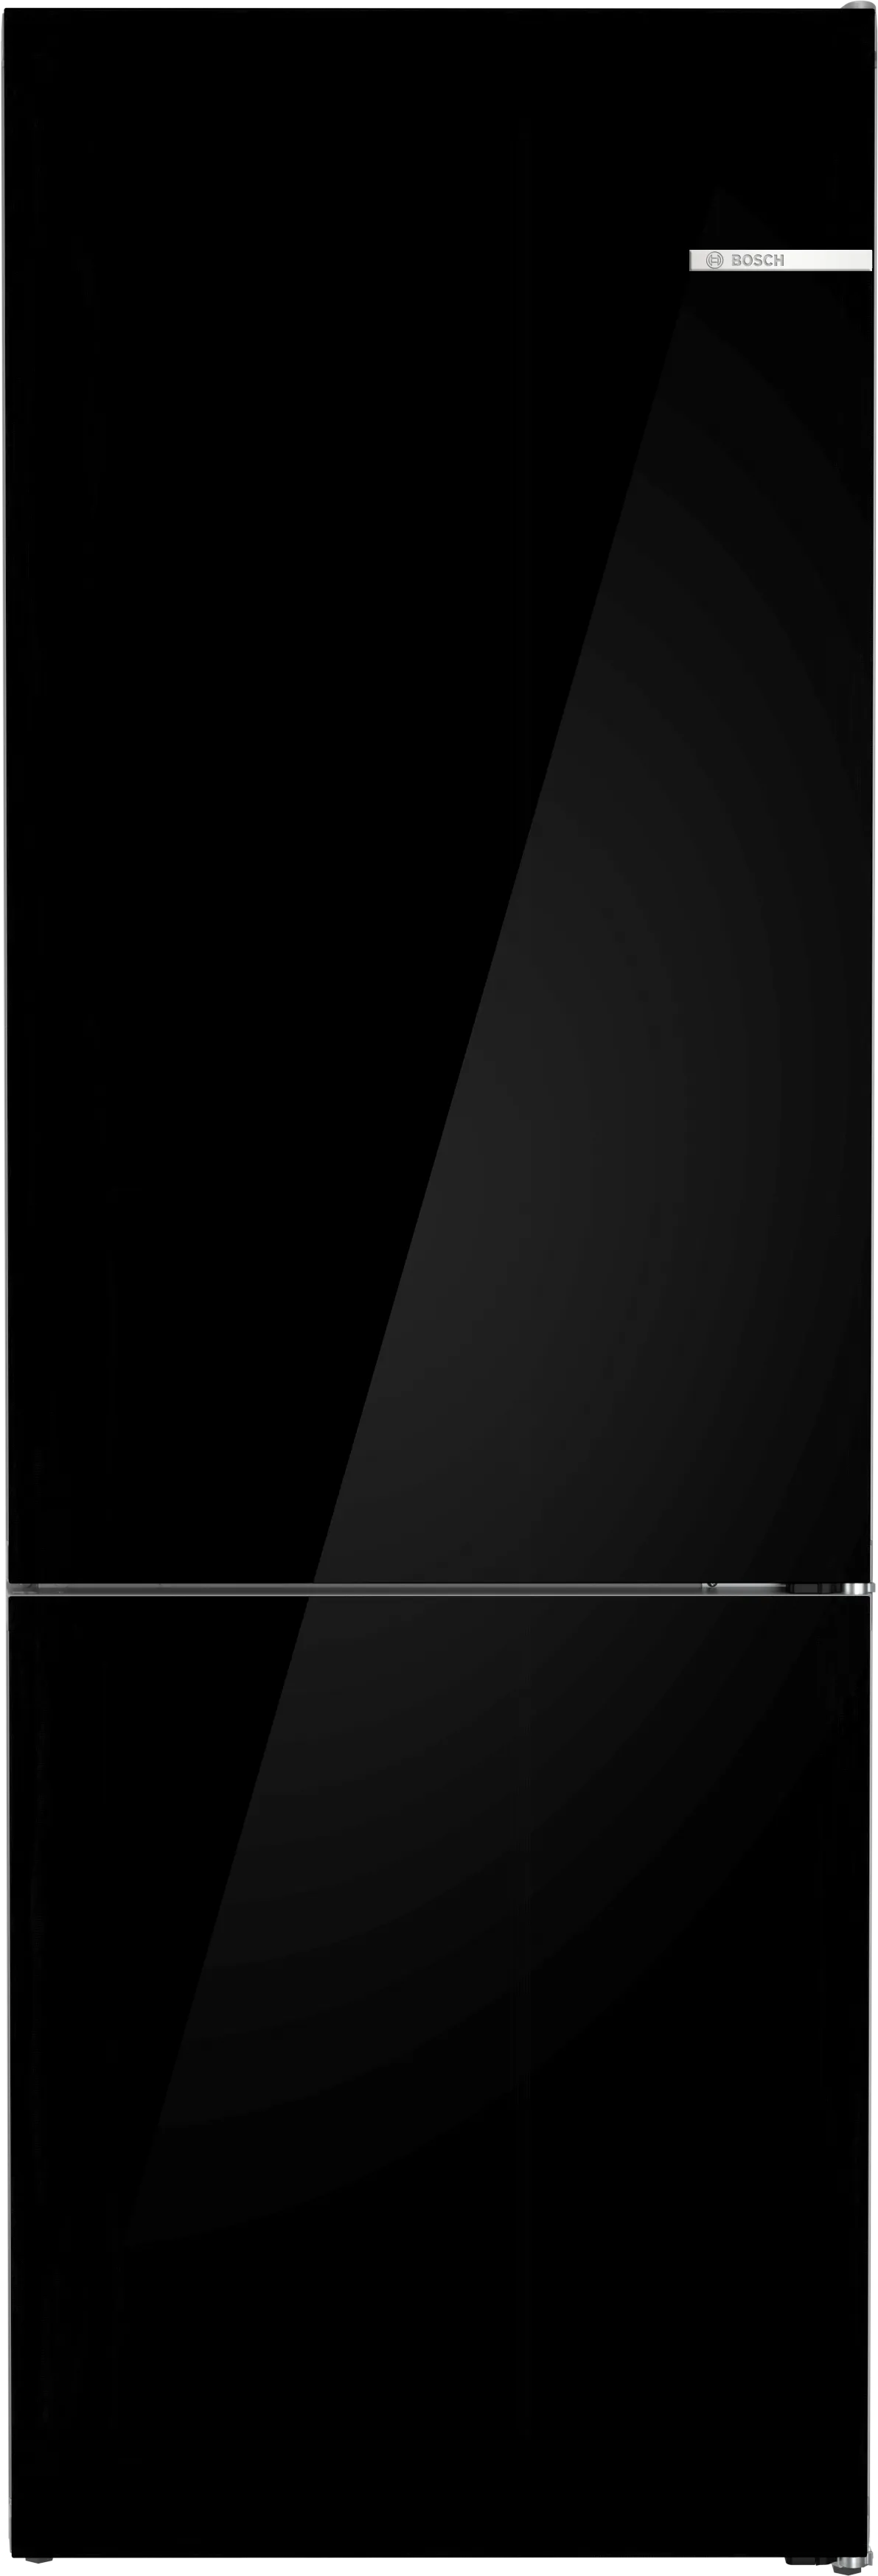 Σειρά 6 Ελεύθερος ψυγειοκαταψύκτης, με γυάλινη πόρτα 203 x 70 cm Μαύρο 